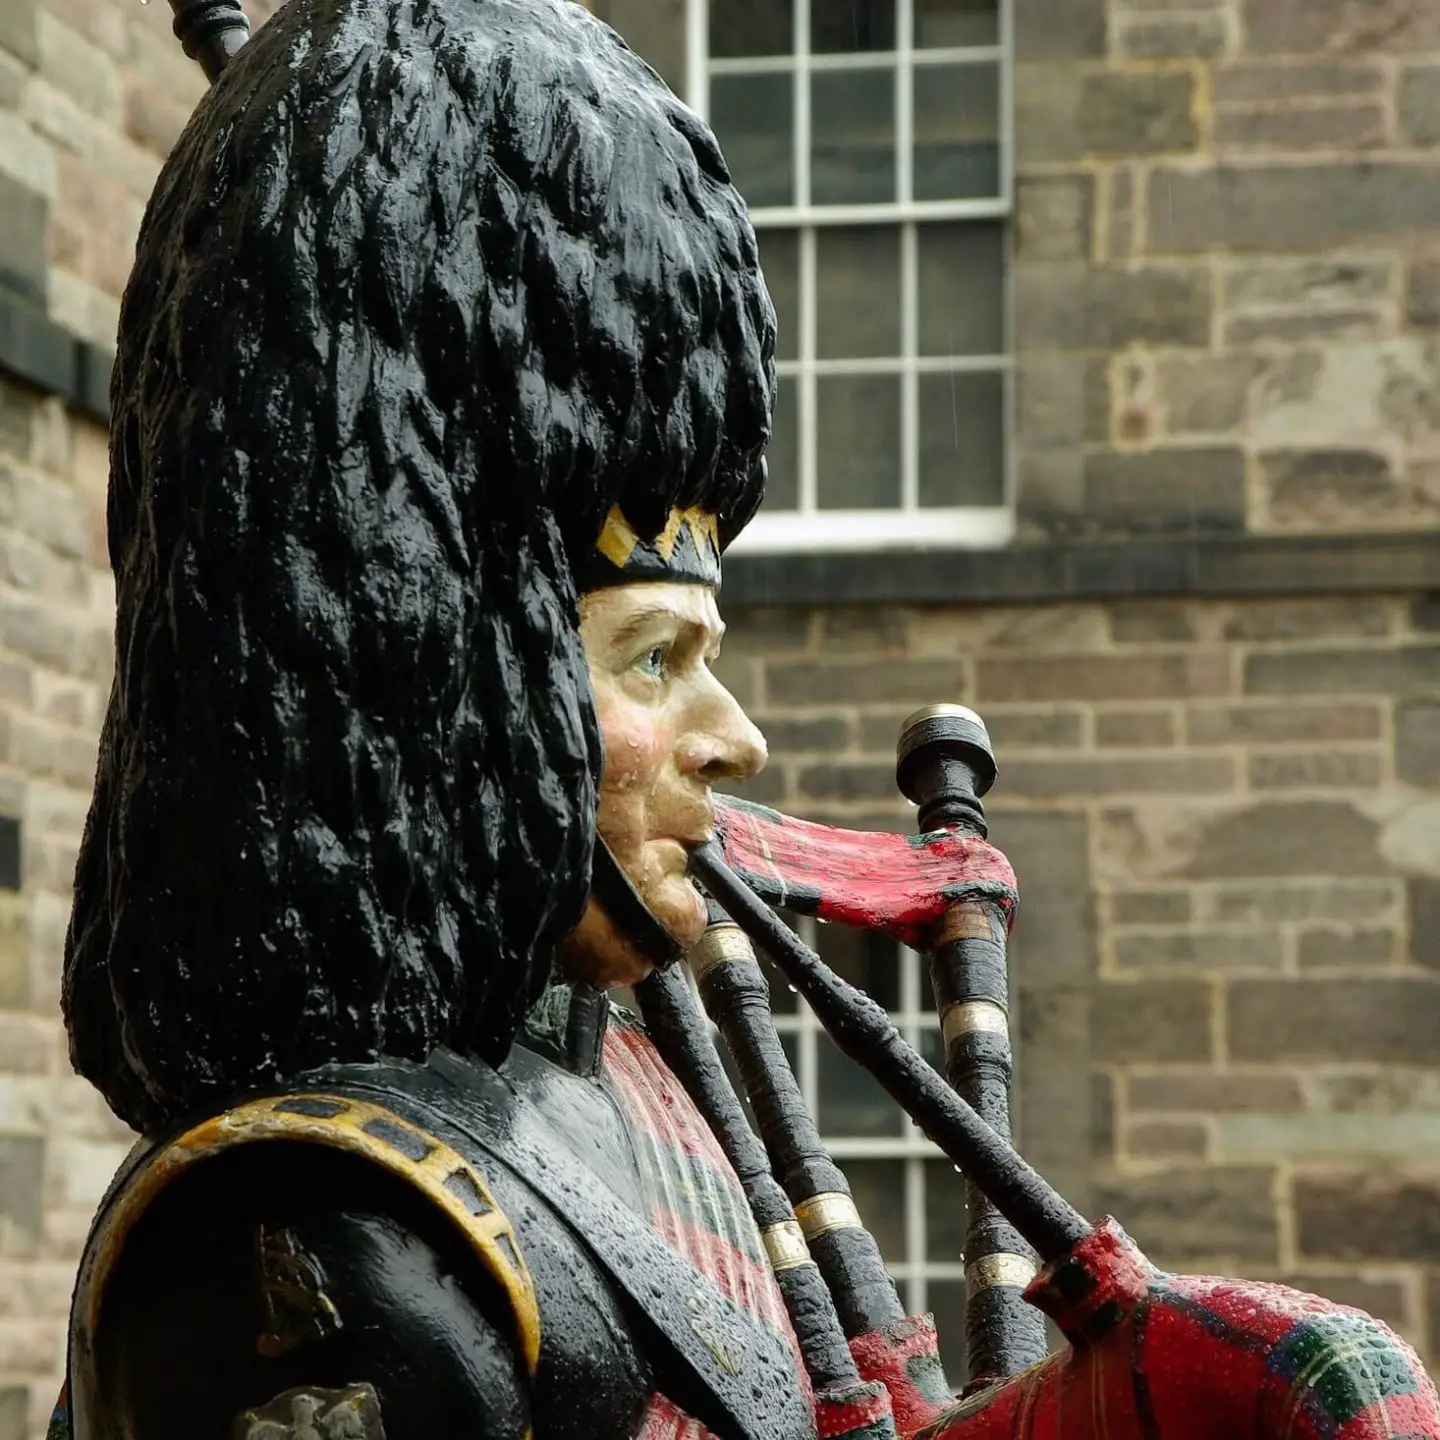 A statue of a Scottish piper